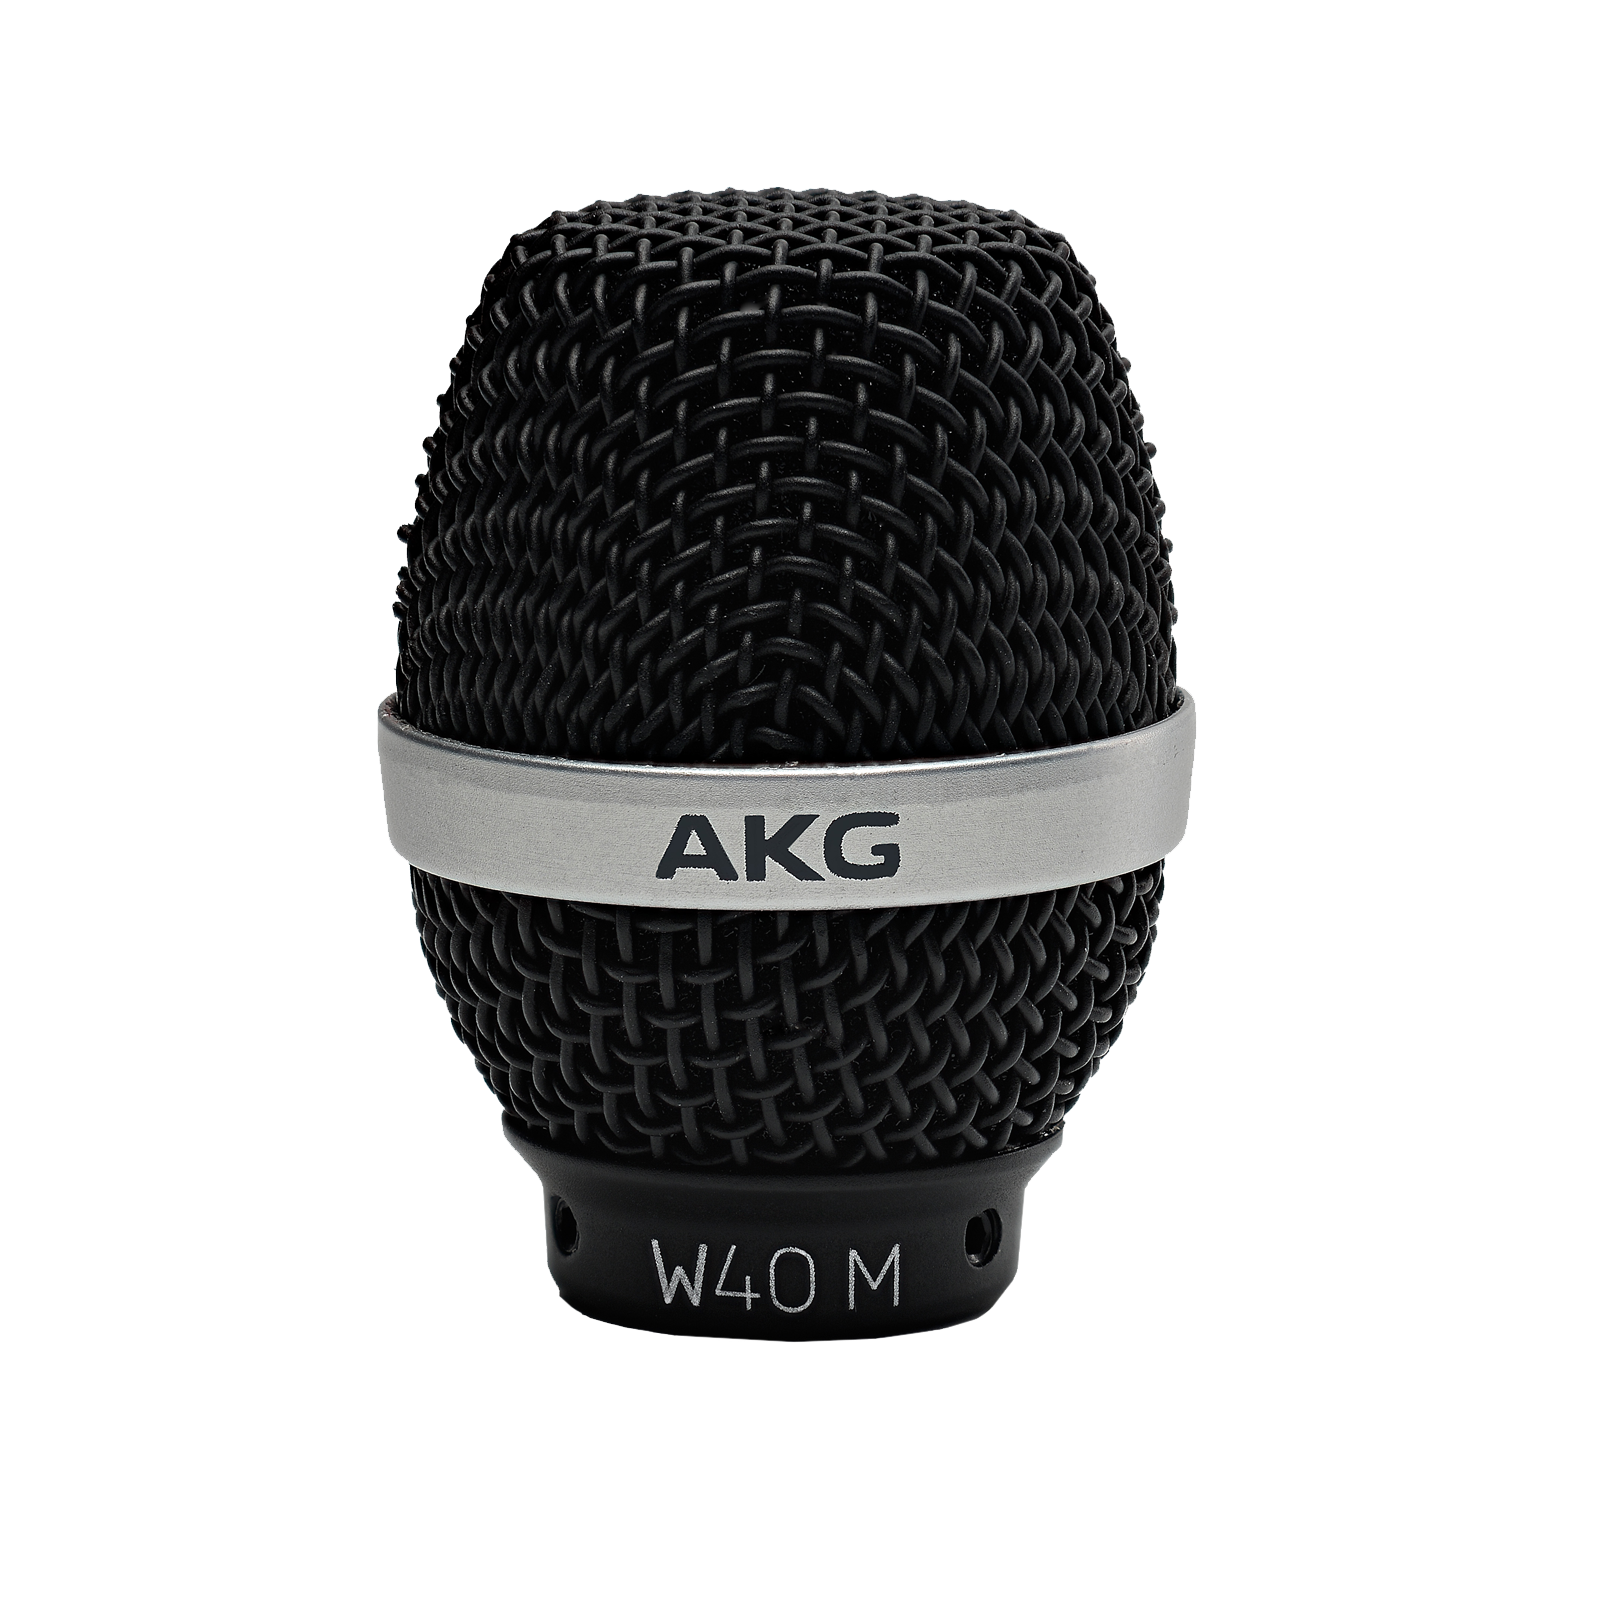 W40 M | Windschutz für CK41 und CK43